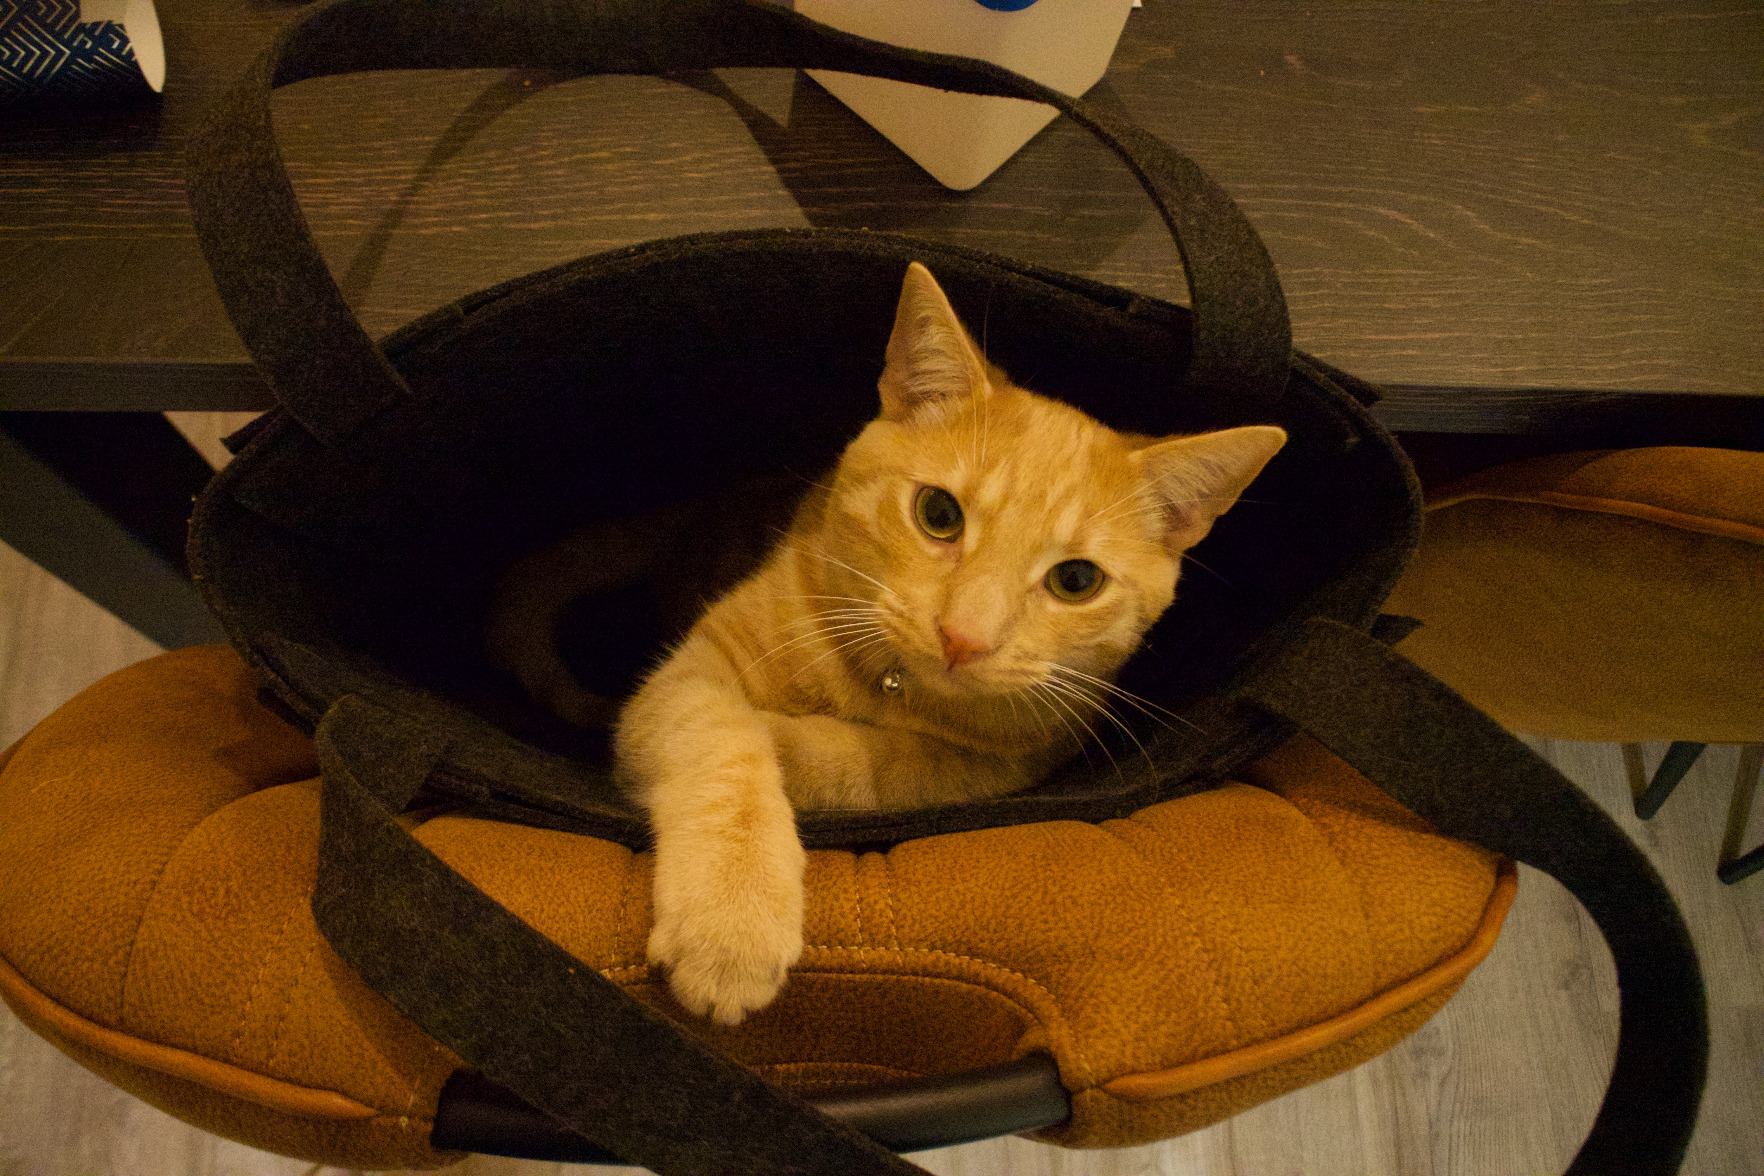 A cat in a bag